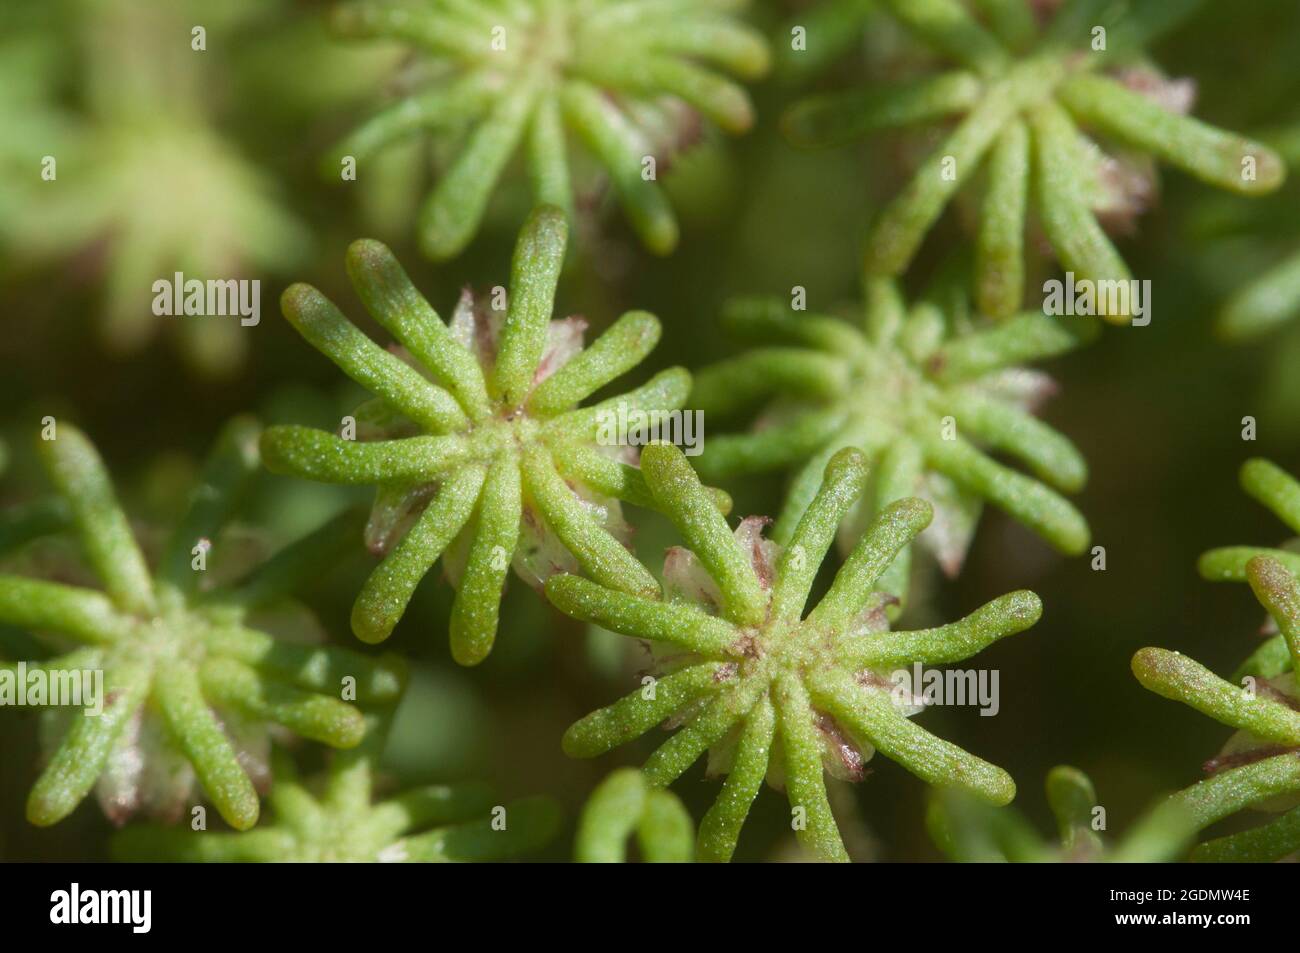 Marchantia polymorpha liverwort, close up shot Stock Photo